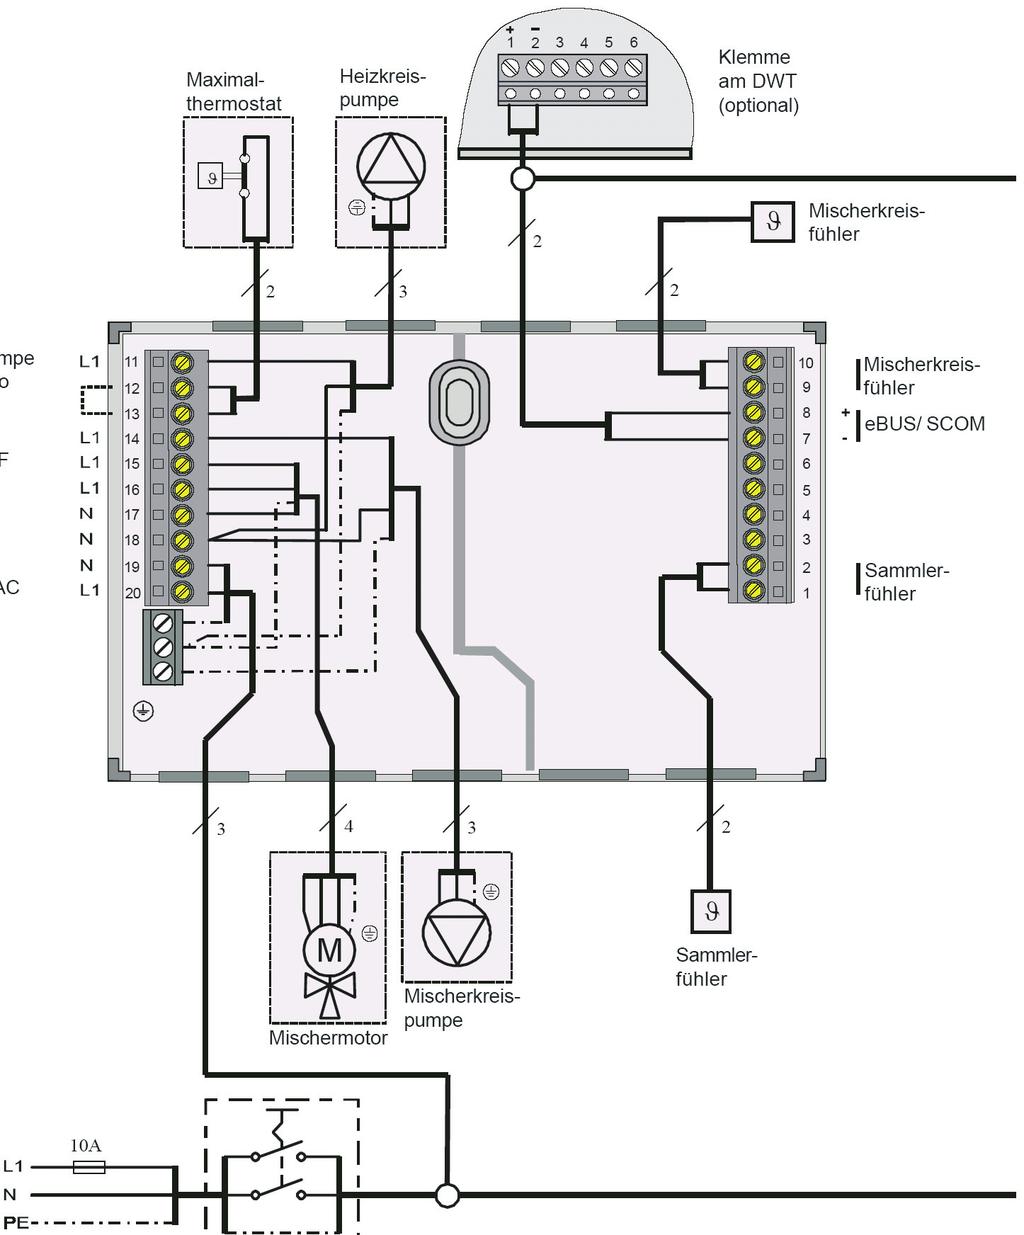 Podłączenie elektryczne Wariant 2: Obieg mieszacza + bezpośredni obieg grzewczy; Parametr 50 = 3 Maksymalny termostat Pompa obiegu grzewczego Zacisk na DWT (opcjonalny) Czujnik obiegu mieszacza Pompa